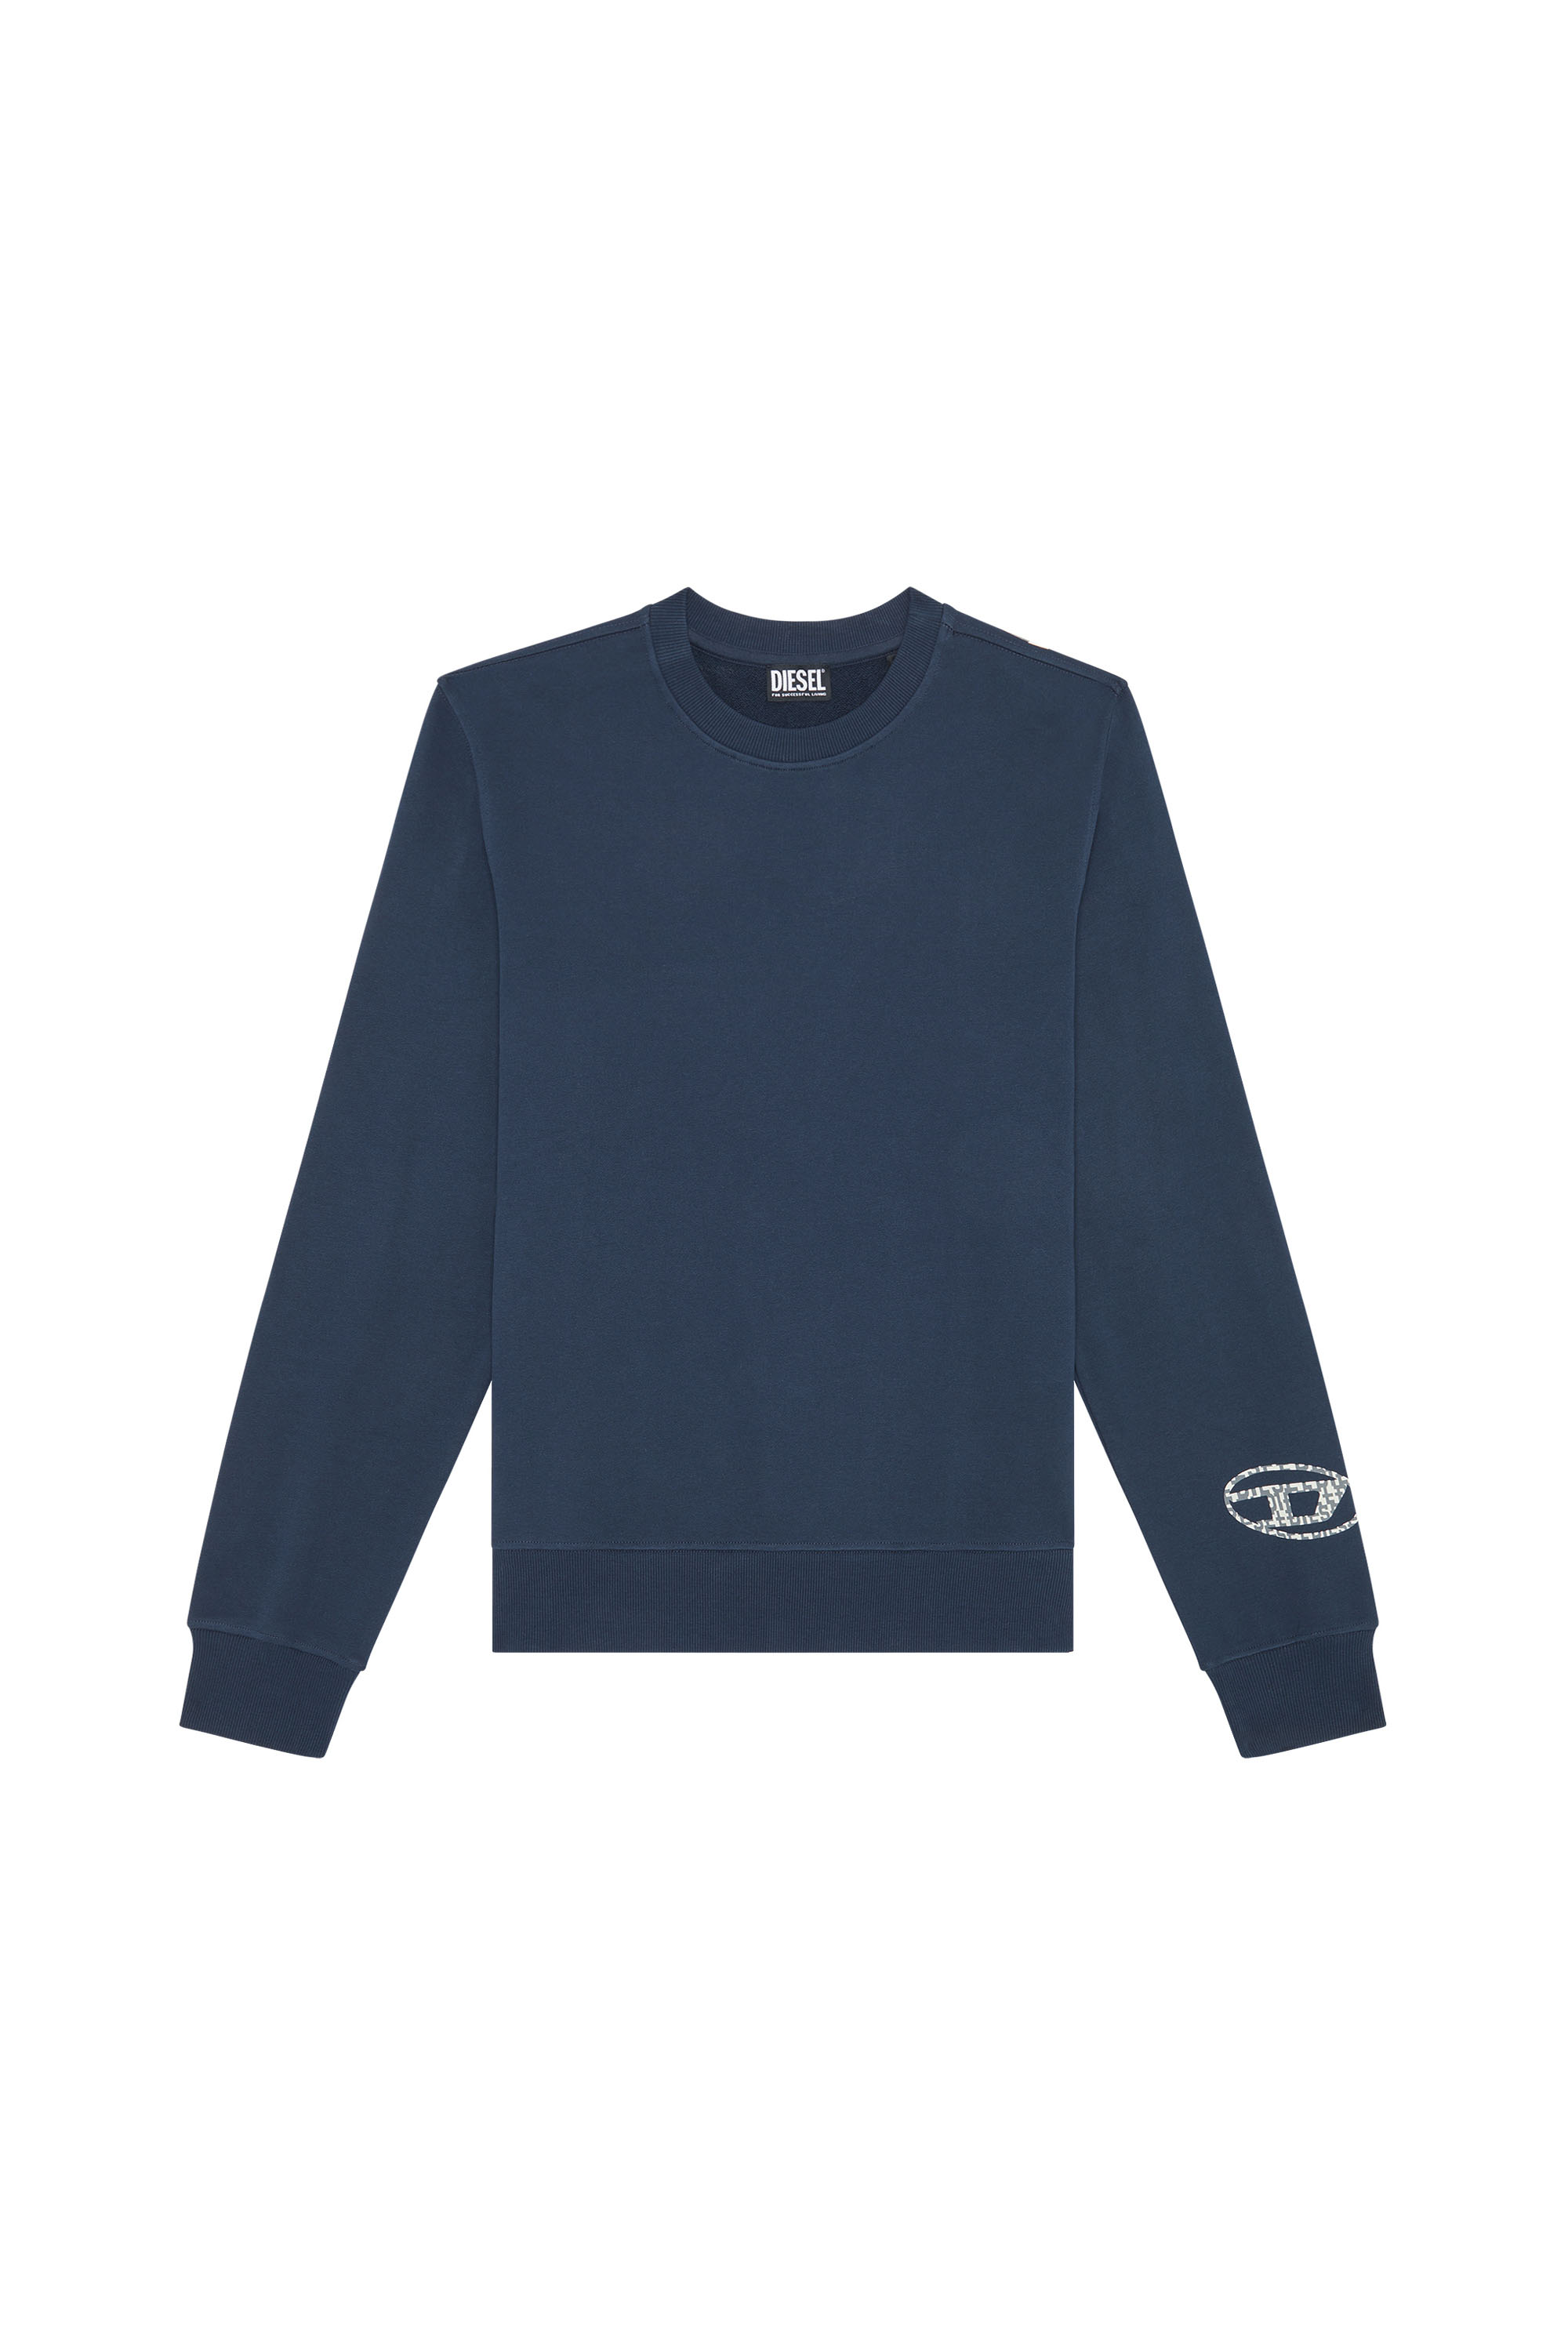 Herren Bekleidung Pullover und Strickware Rundhals Pullover DIESEL Andere materialien sweatshirt in Blau für Herren 